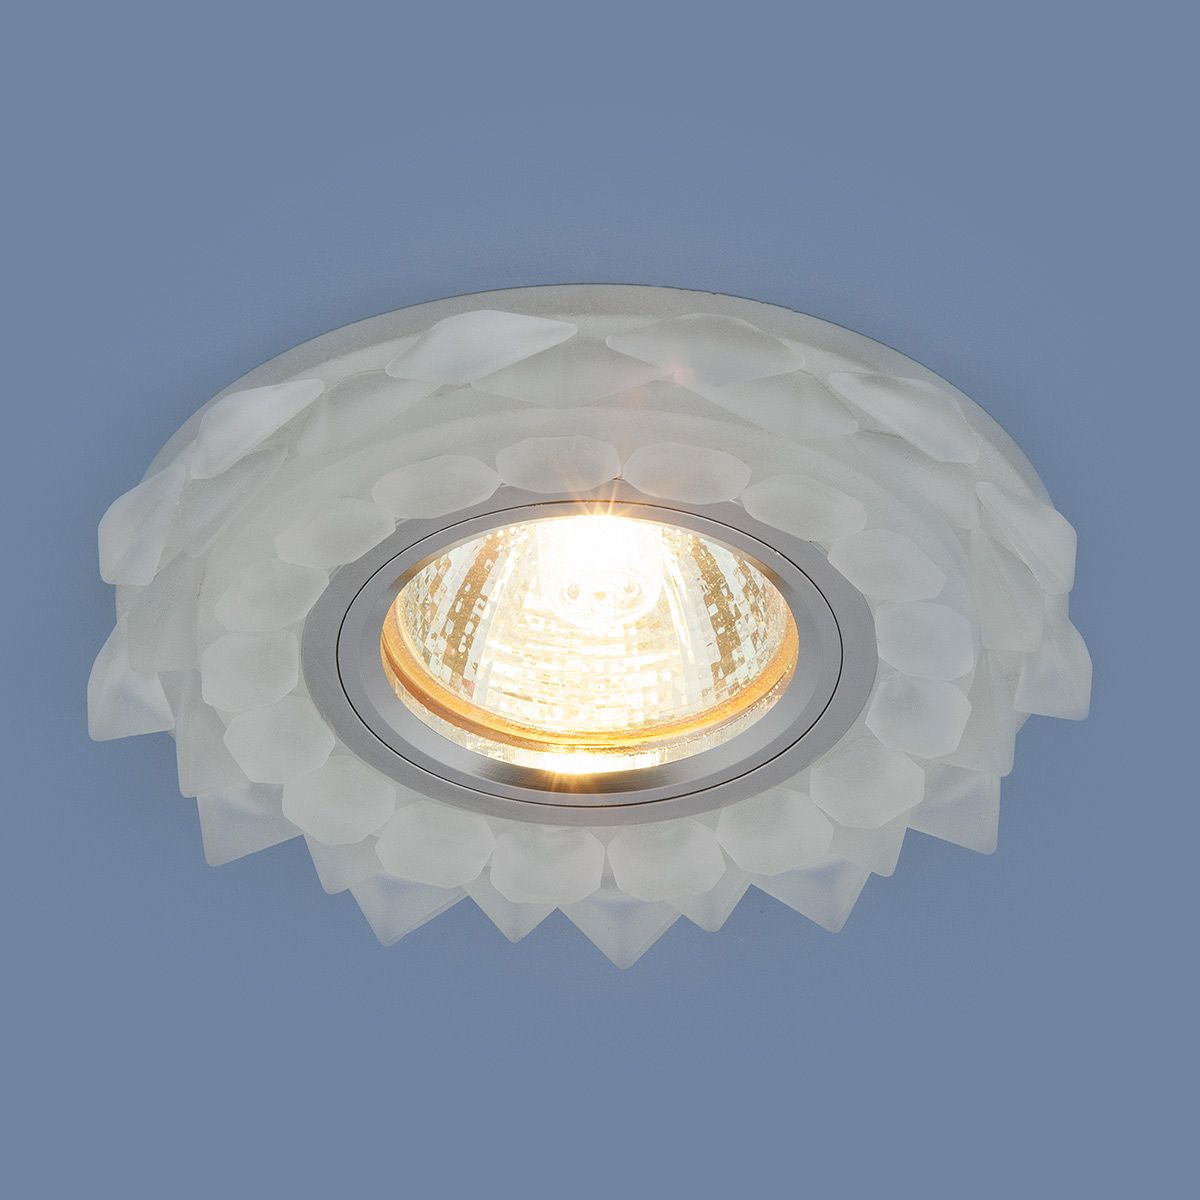 Точечный светильник с LED подсветкой Elektrostandard 2208-2209-2210 2209 MR16 Matt Ice матовый лед. Фото 2